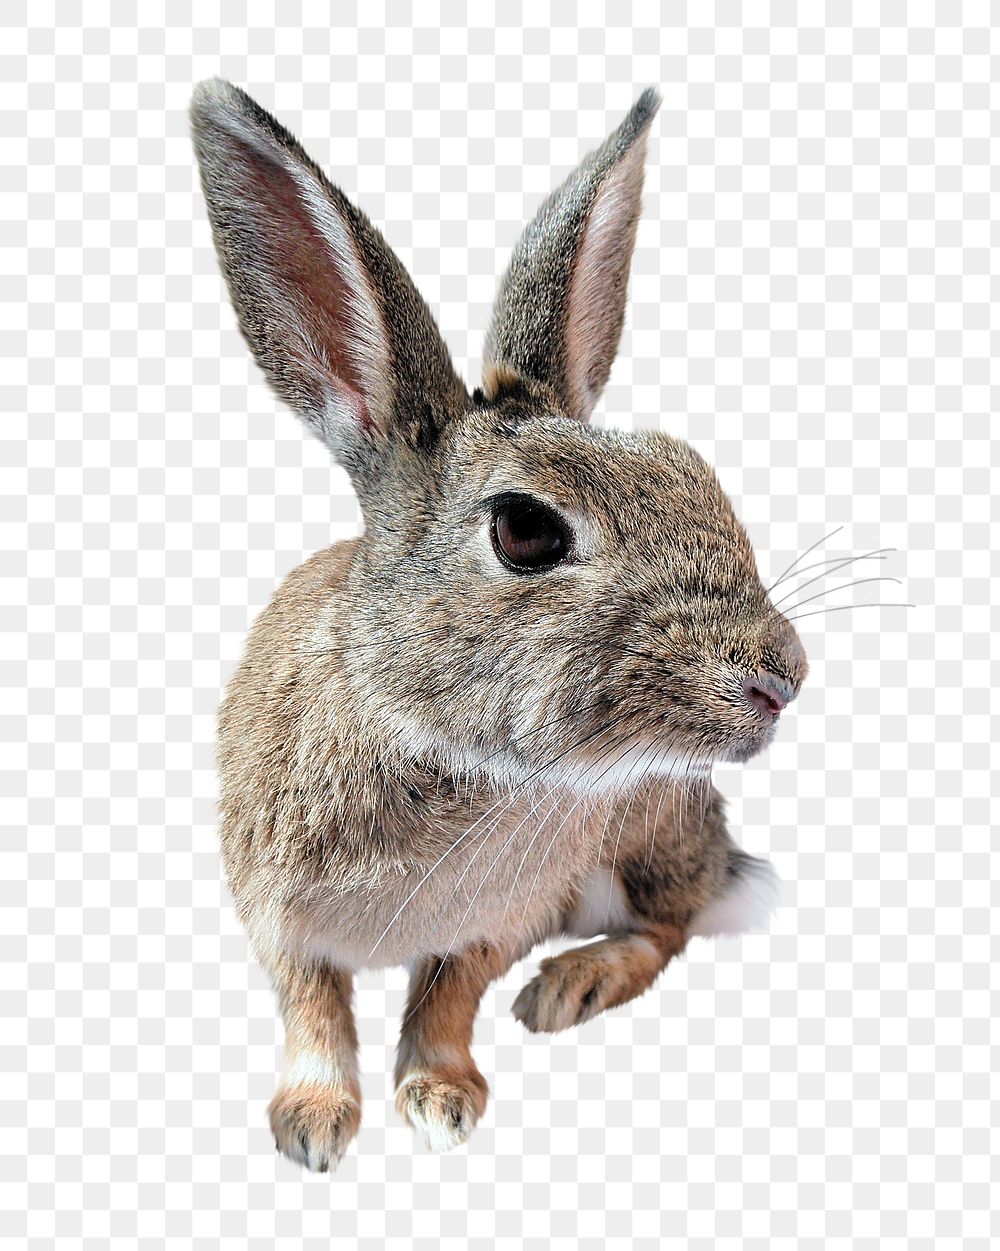 Wild rabbit png sticker, transparent background